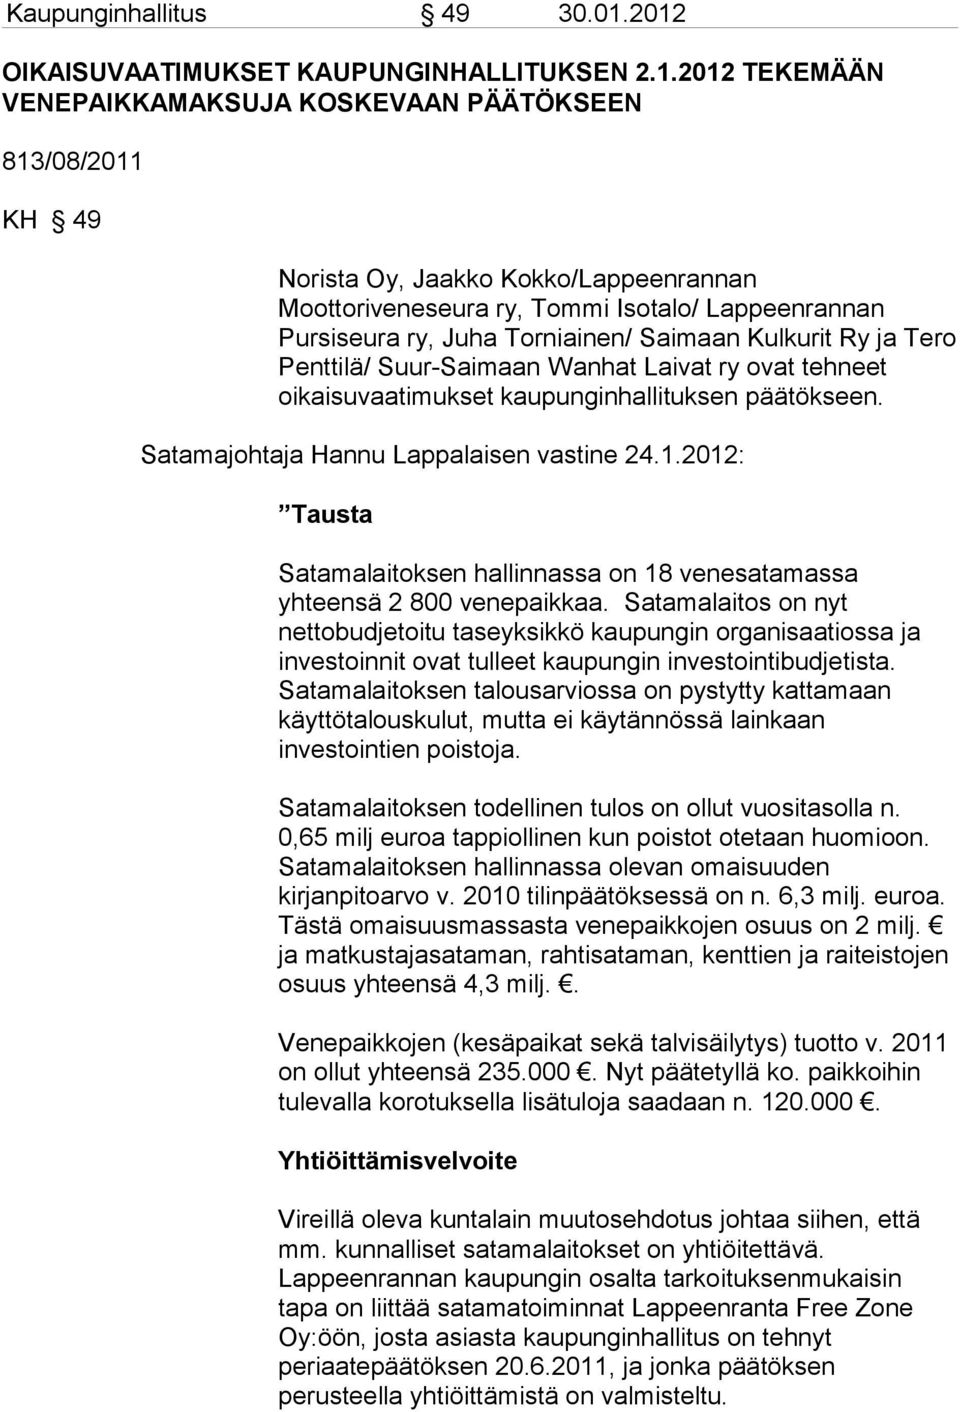 Lappeenrannan Pursiseura ry, Juha Torniainen/ Saimaan Kulkurit Ry ja Tero Penttilä/ Suur-Saimaan Wanhat Laivat ry ovat tehneet oikaisuvaatimukset kaupunginhallituksen päätökseen.